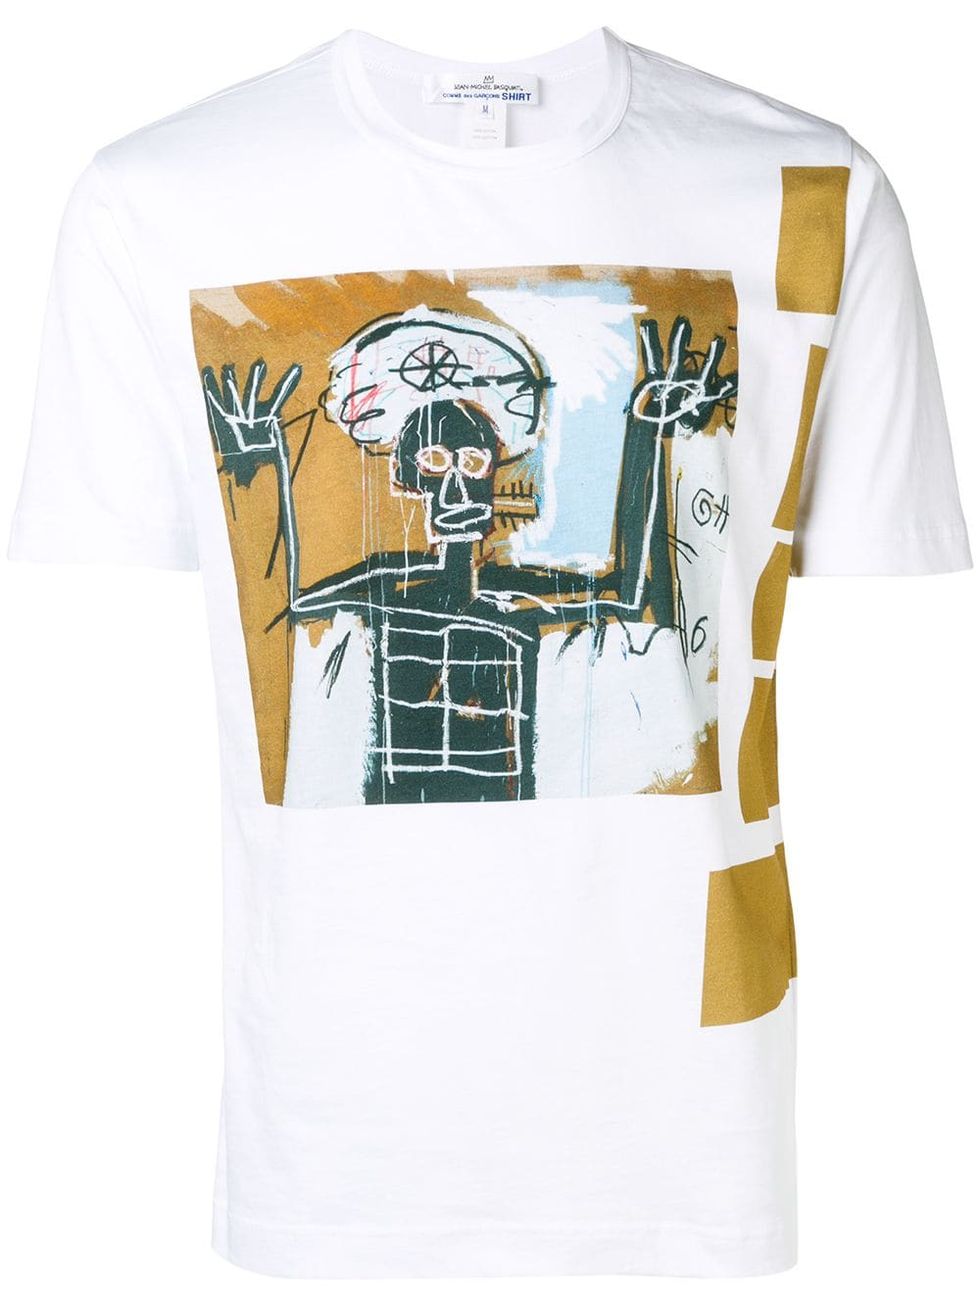 The Comme des Garçons Shirt x Basquiat Collab Is an Actual Work of Art